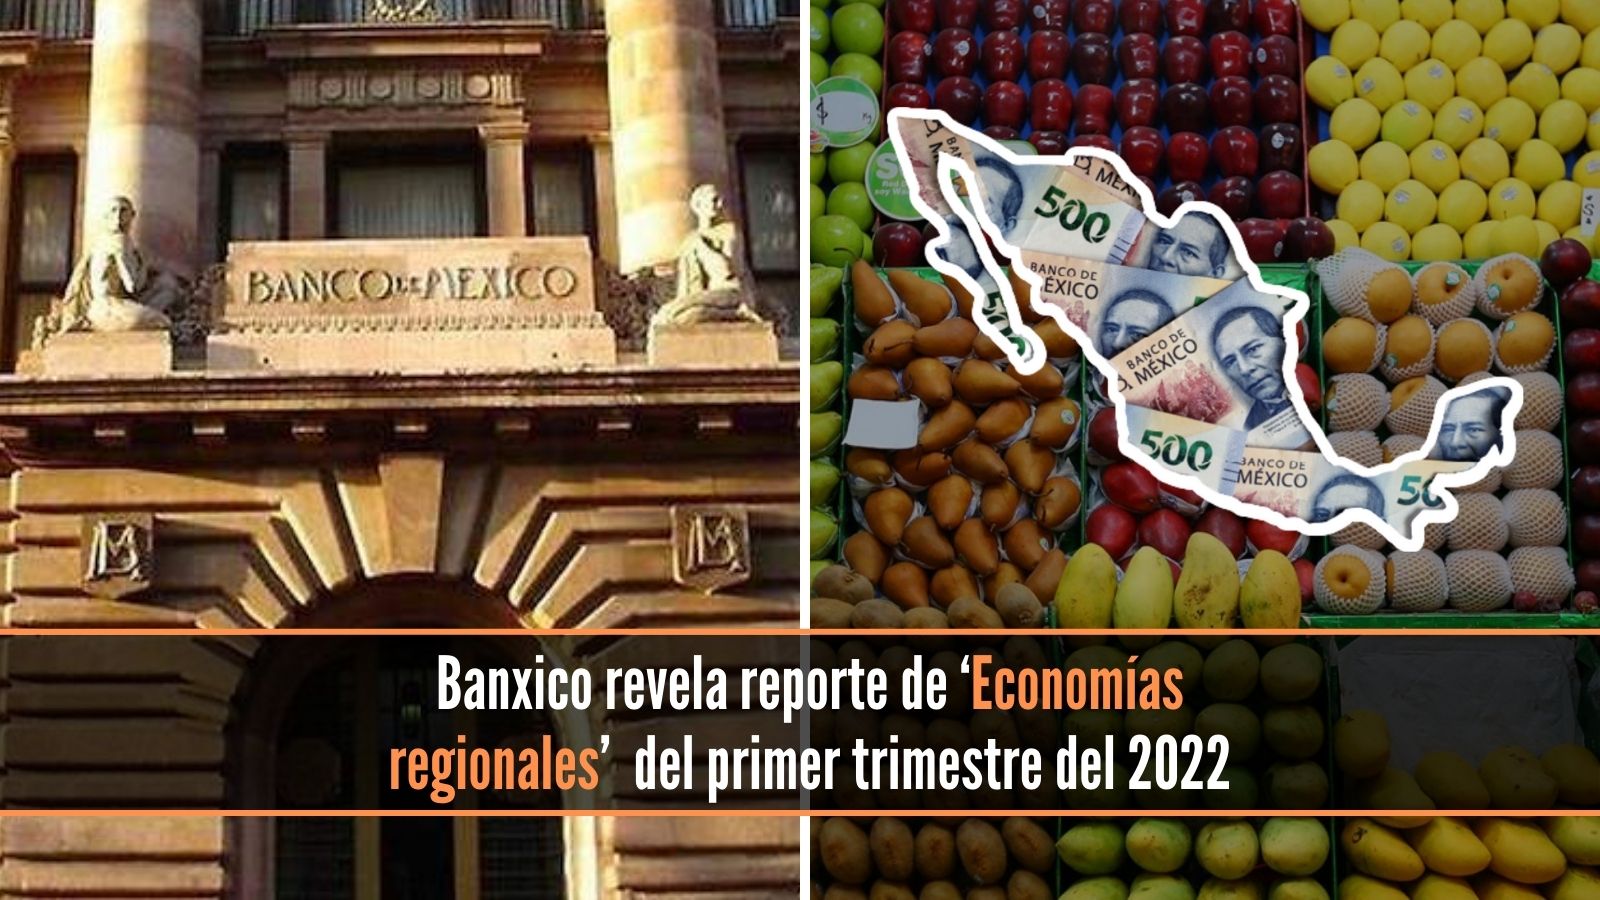 Banxico economías regionales enero a marzo 2022 (1)